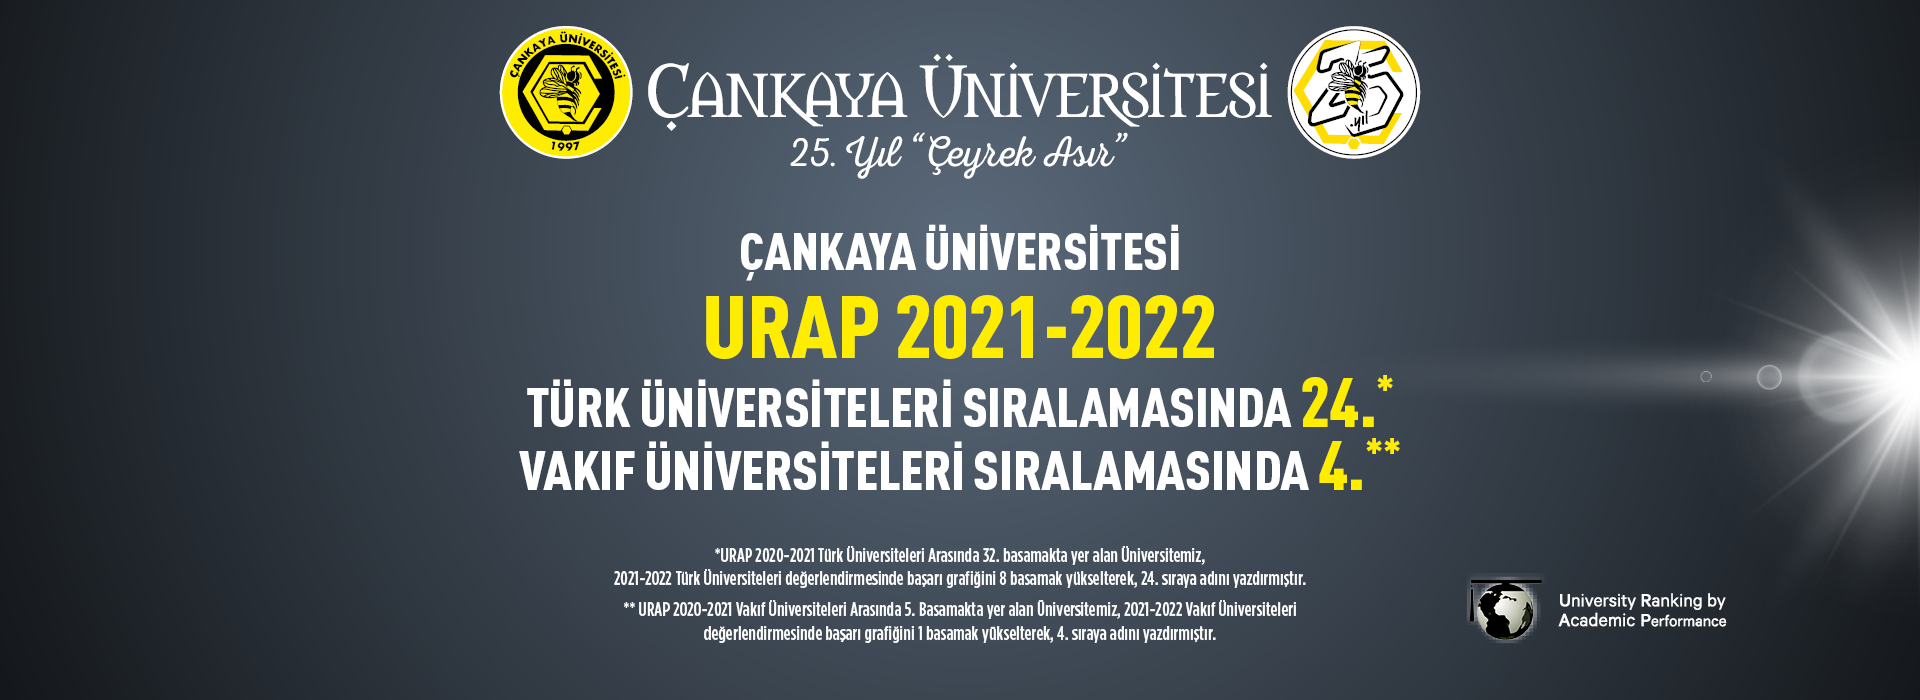 Çankaya üniversitesi Urap 2021-2022 Türk Üniversiteleri Sıralamasında 24., Vakıf Üniversiteleri Sıralamasında 4.